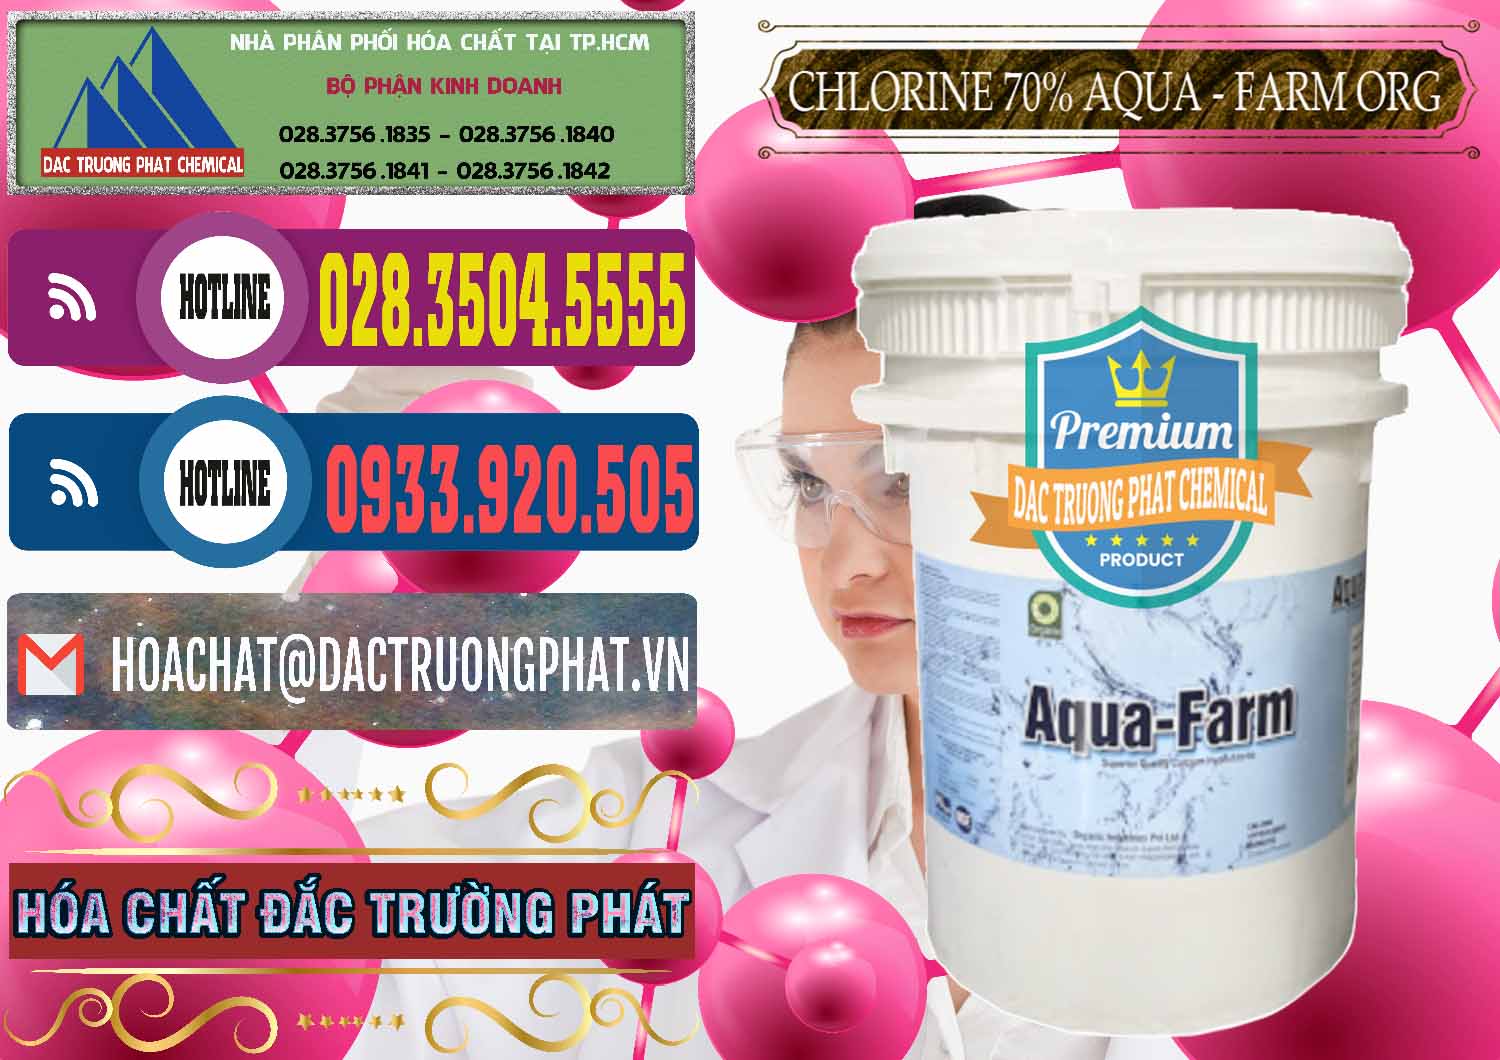 Chuyên cung ứng ( bán ) Chlorine – Clorin 70% Aqua - Farm ORG Organic Ấn Độ India - 0246 - Đơn vị bán & phân phối hóa chất tại TP.HCM - muabanhoachat.com.vn